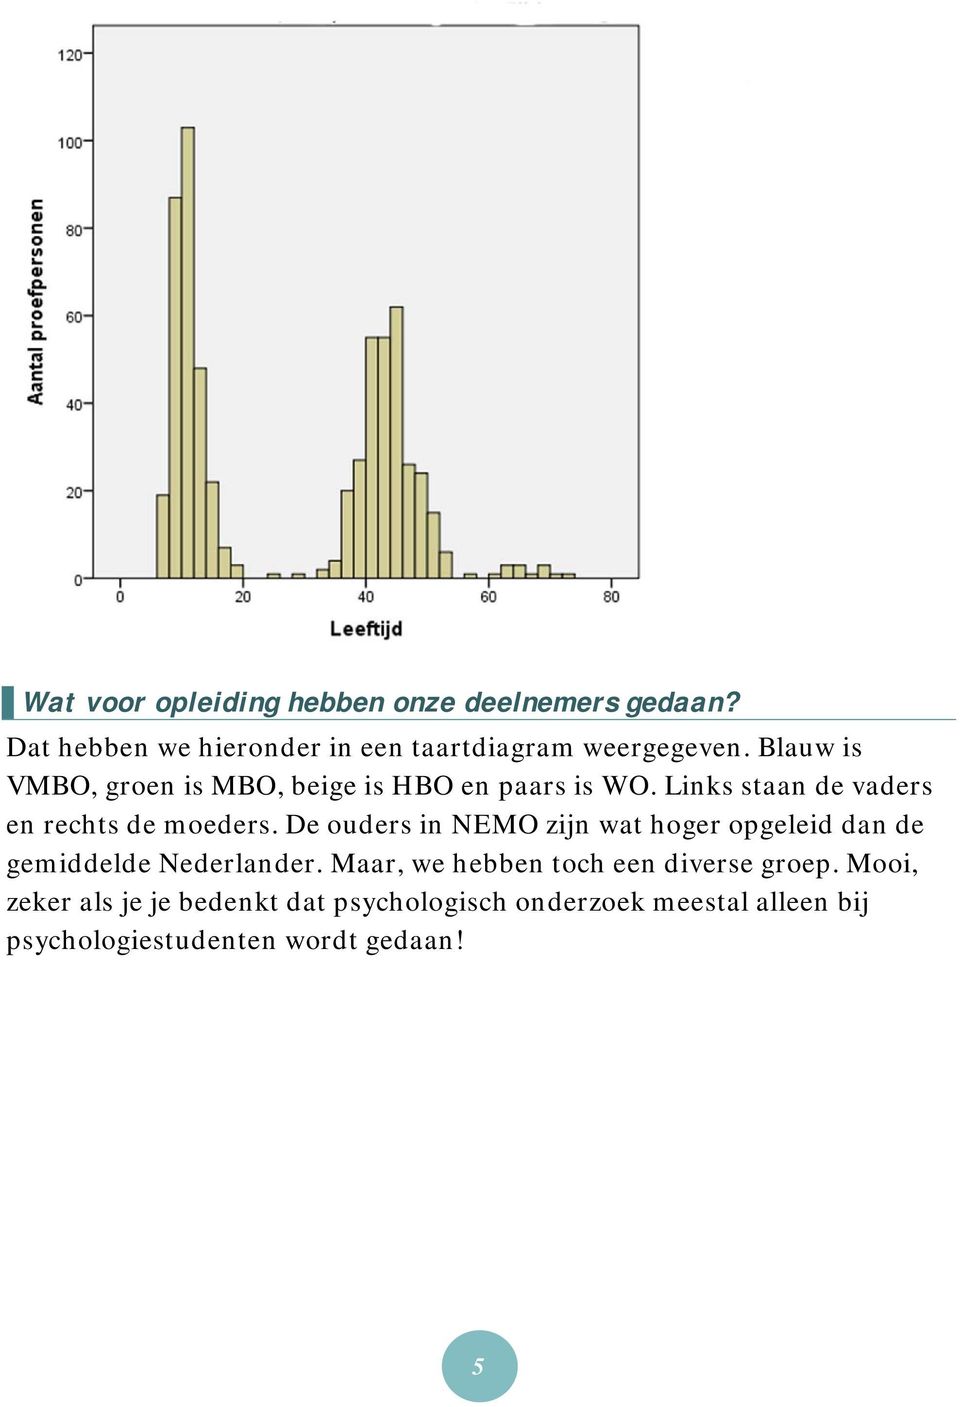 De ouders in NEMO zijn wat hoger opgeleid dan de gemiddelde Nederlander.